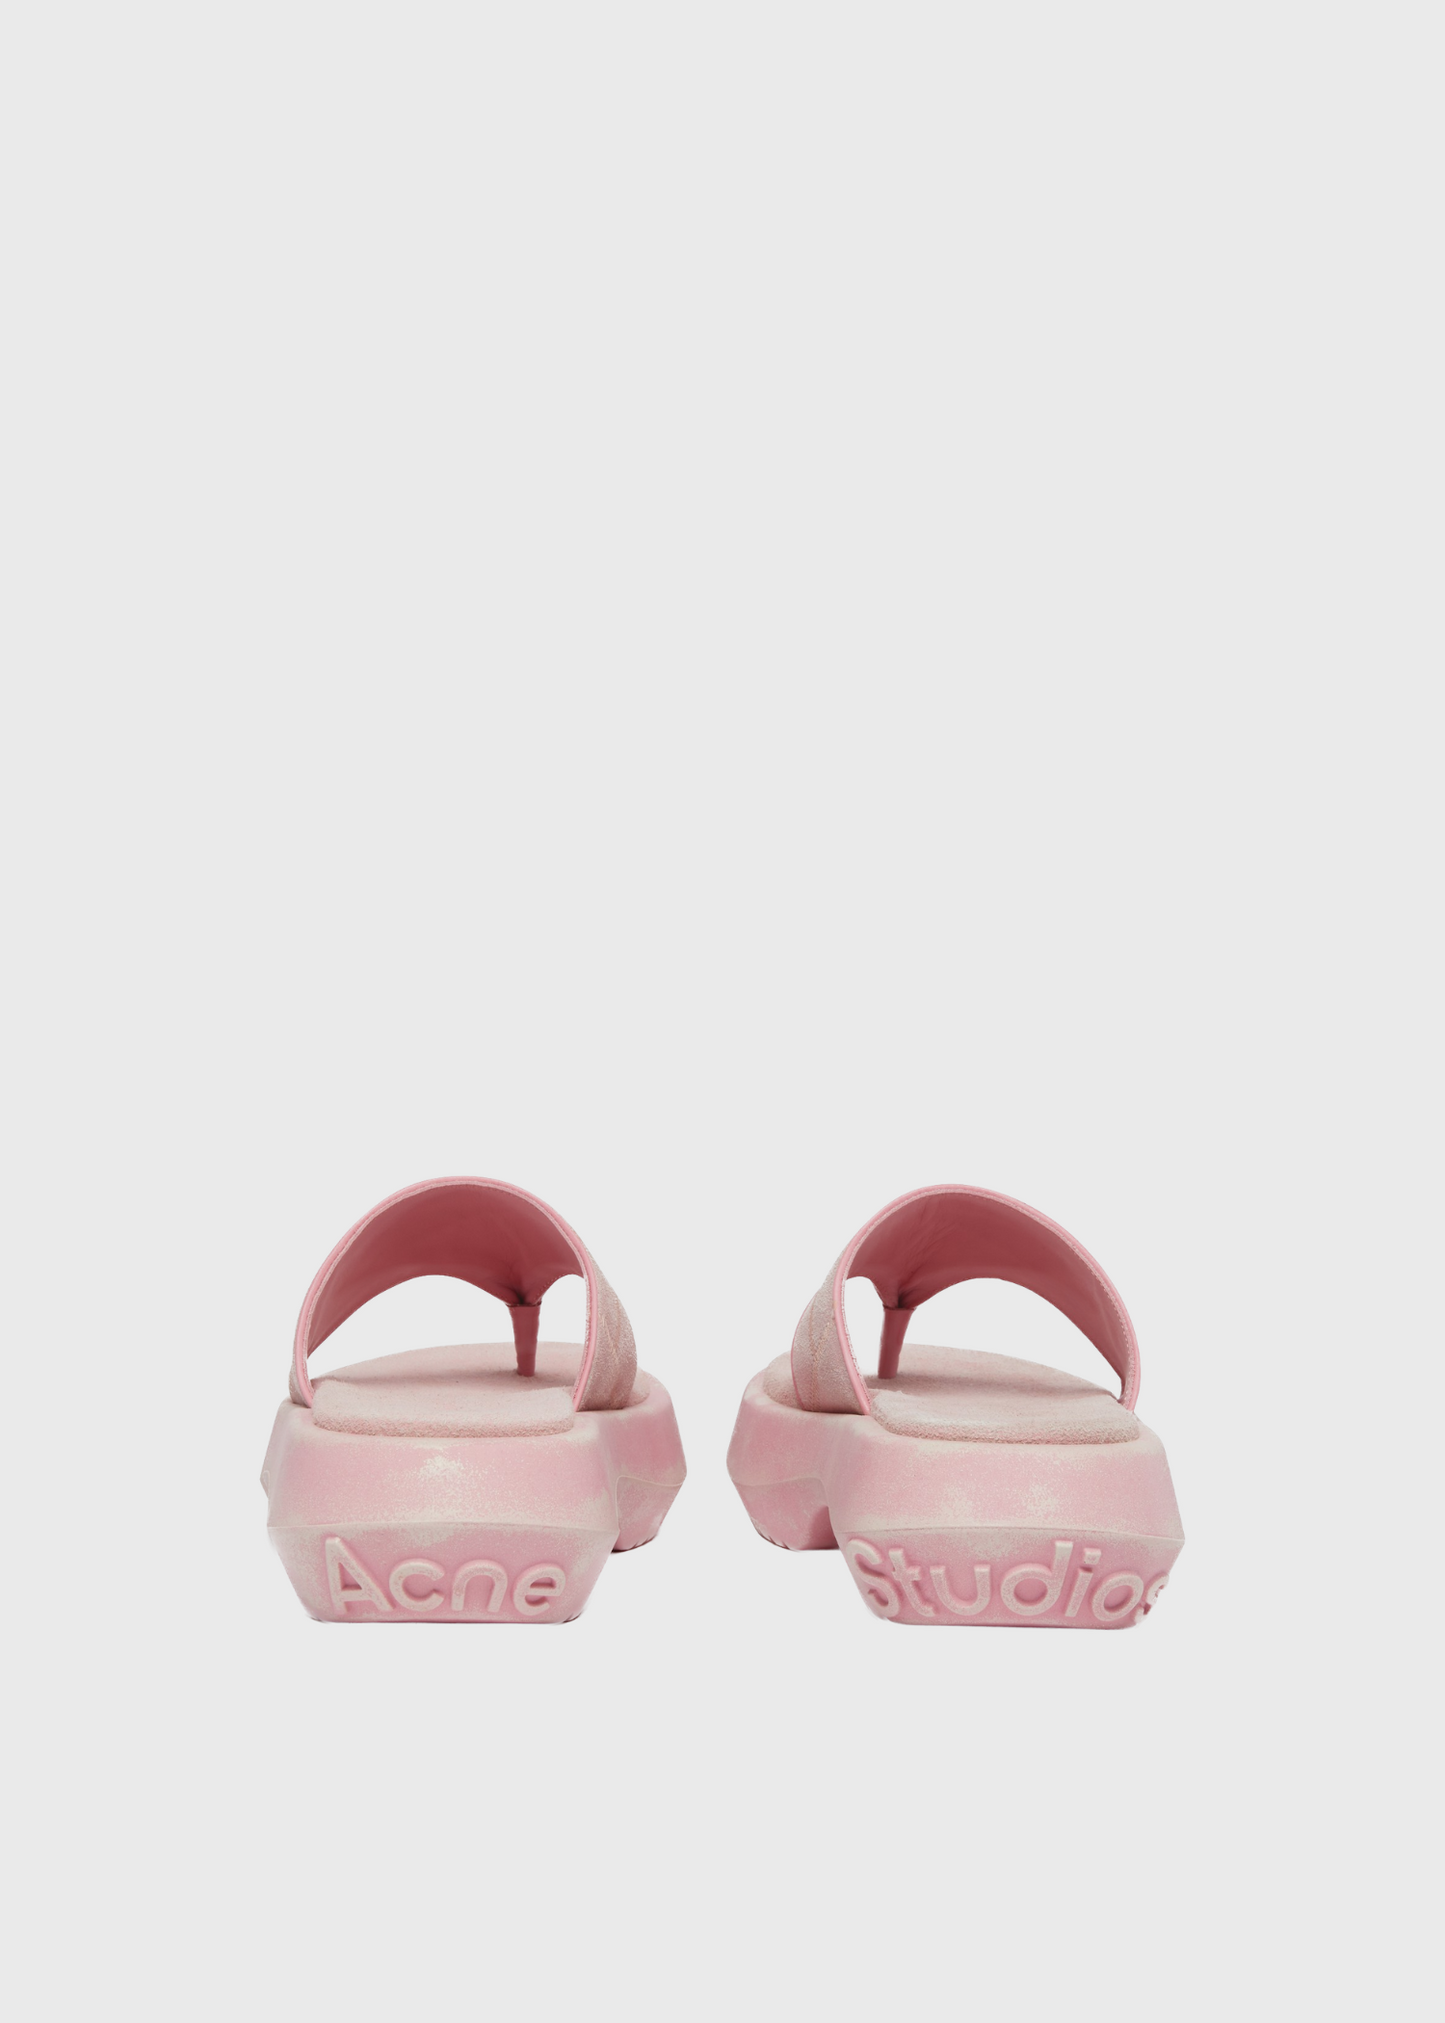 Leather sandals, blush pink, flip flops